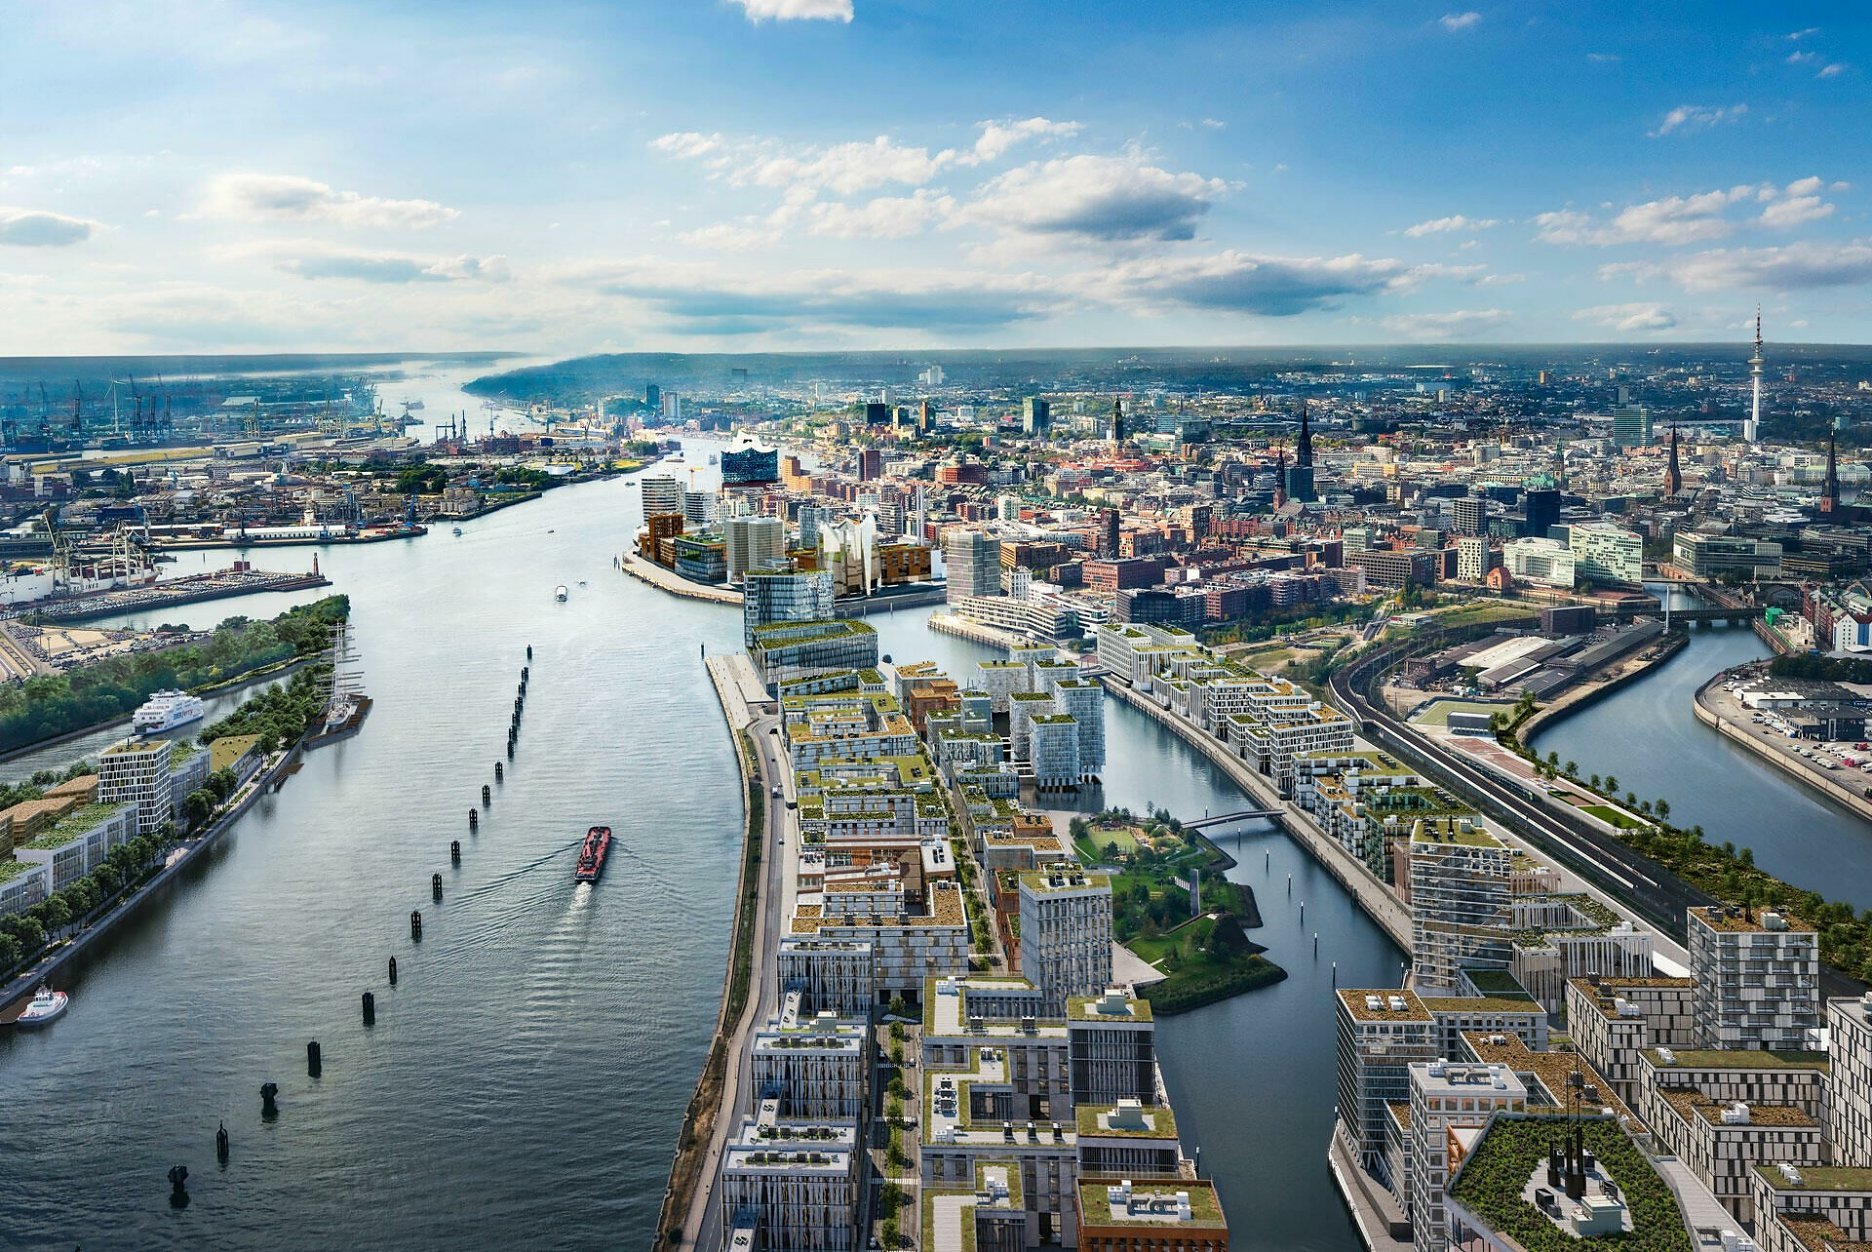 HafenCity sa rozprestiera na ploche bývalej lodenice v centre Hamburgu. 